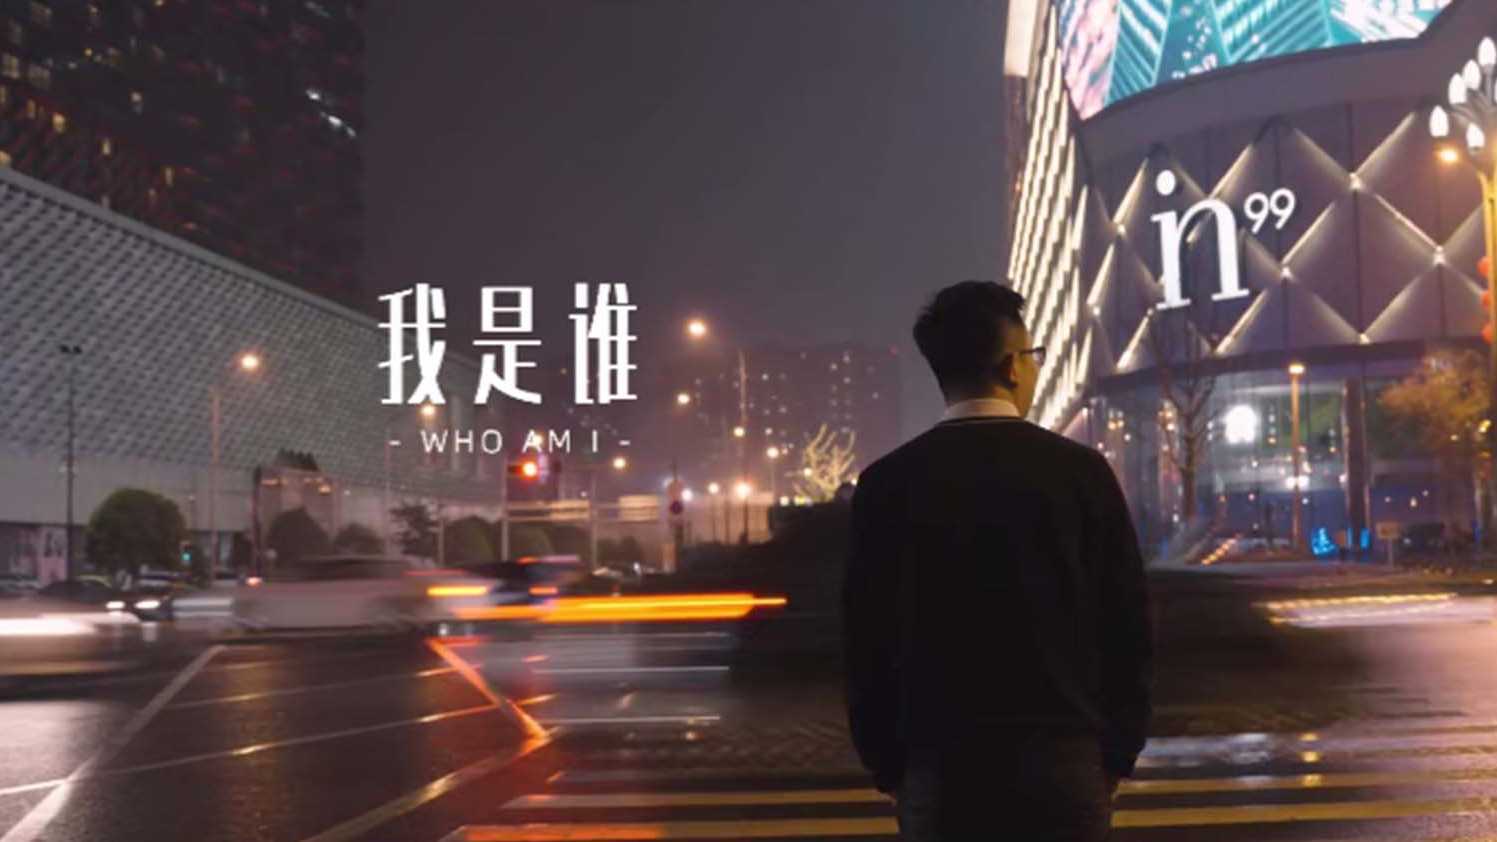 中国民生银行四川省分行微电影-小微金融《我是谁》